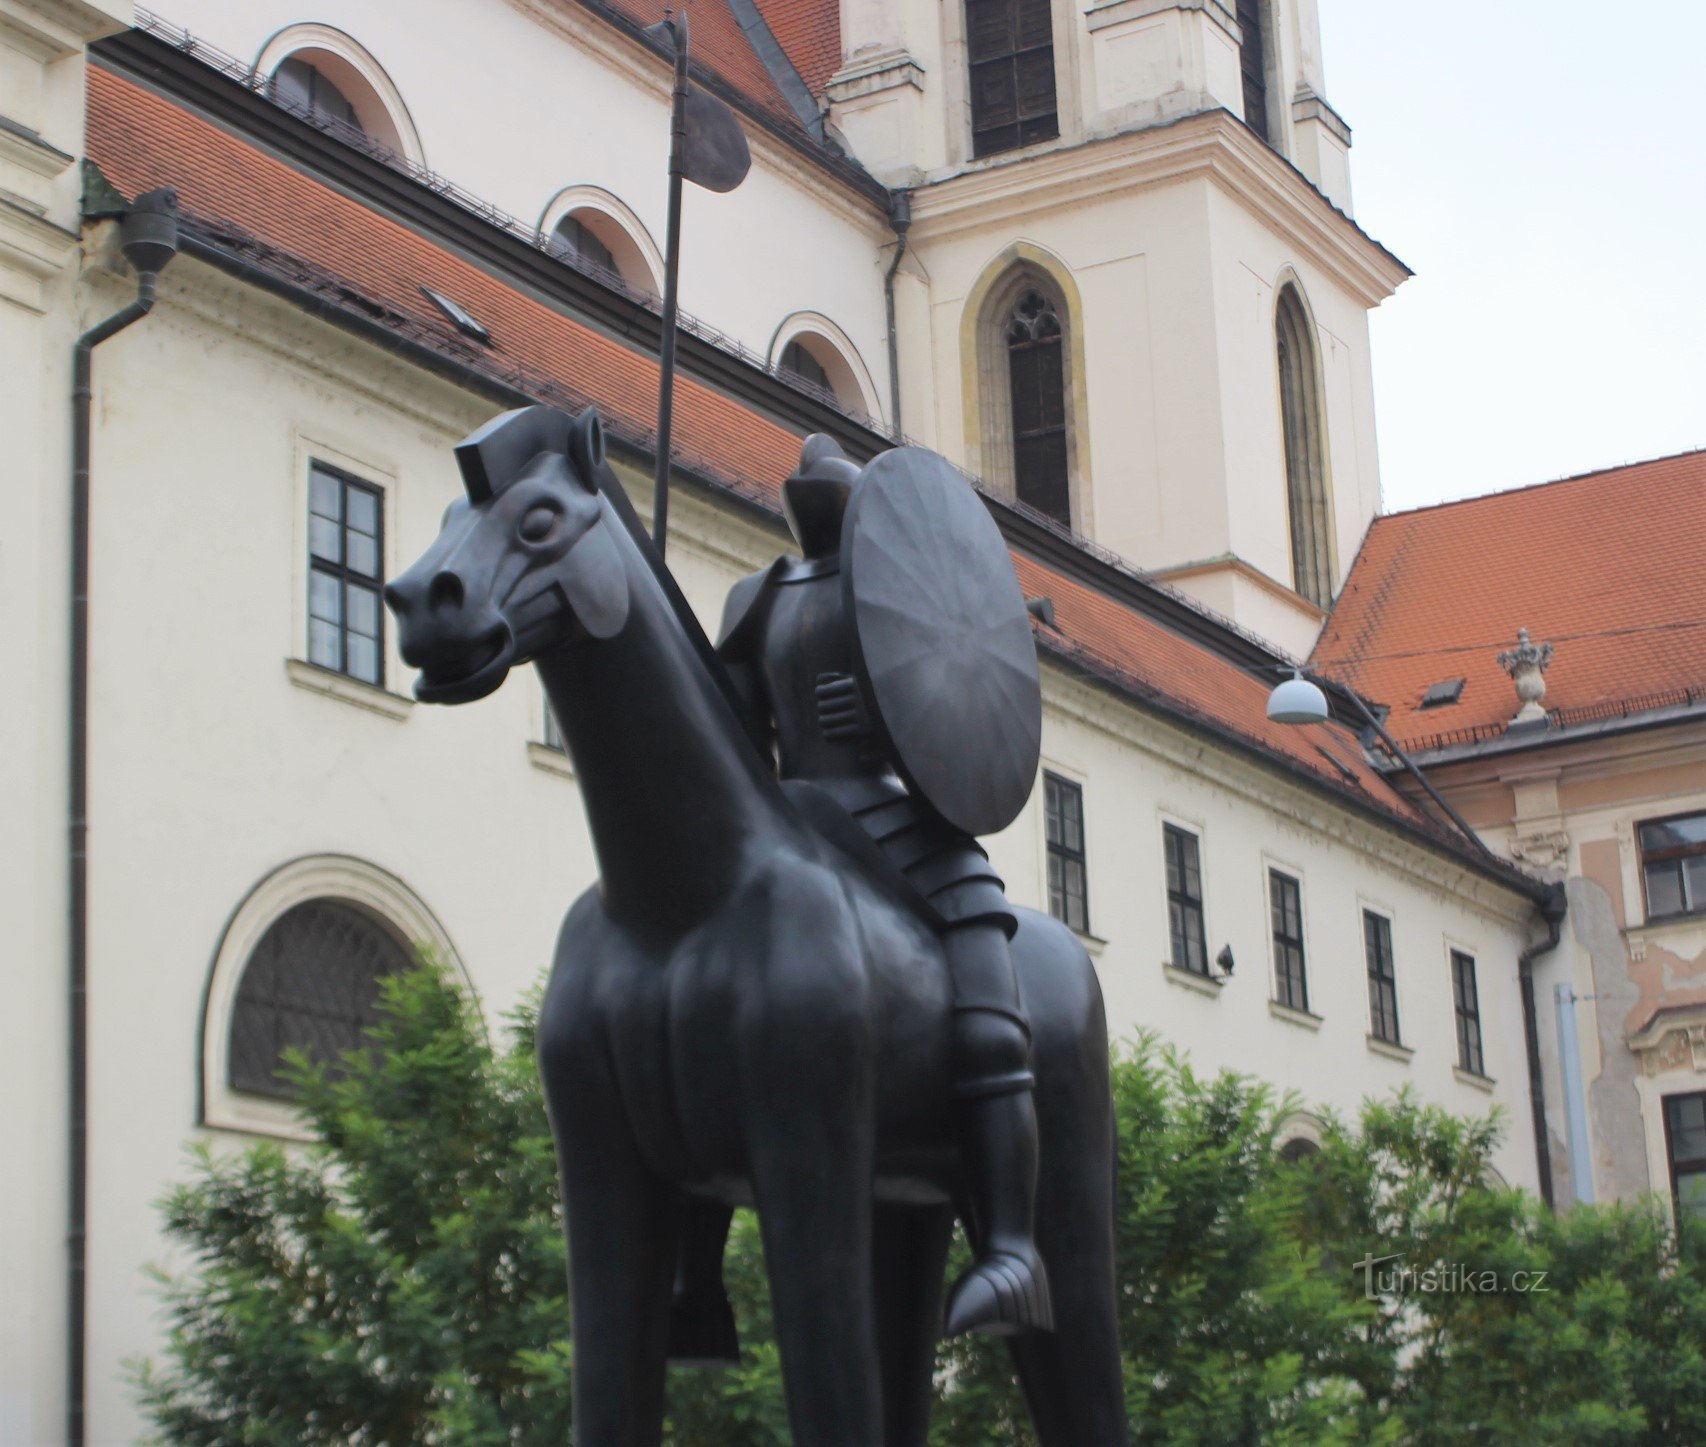 Jost of Luxembourg trên lưng ngựa